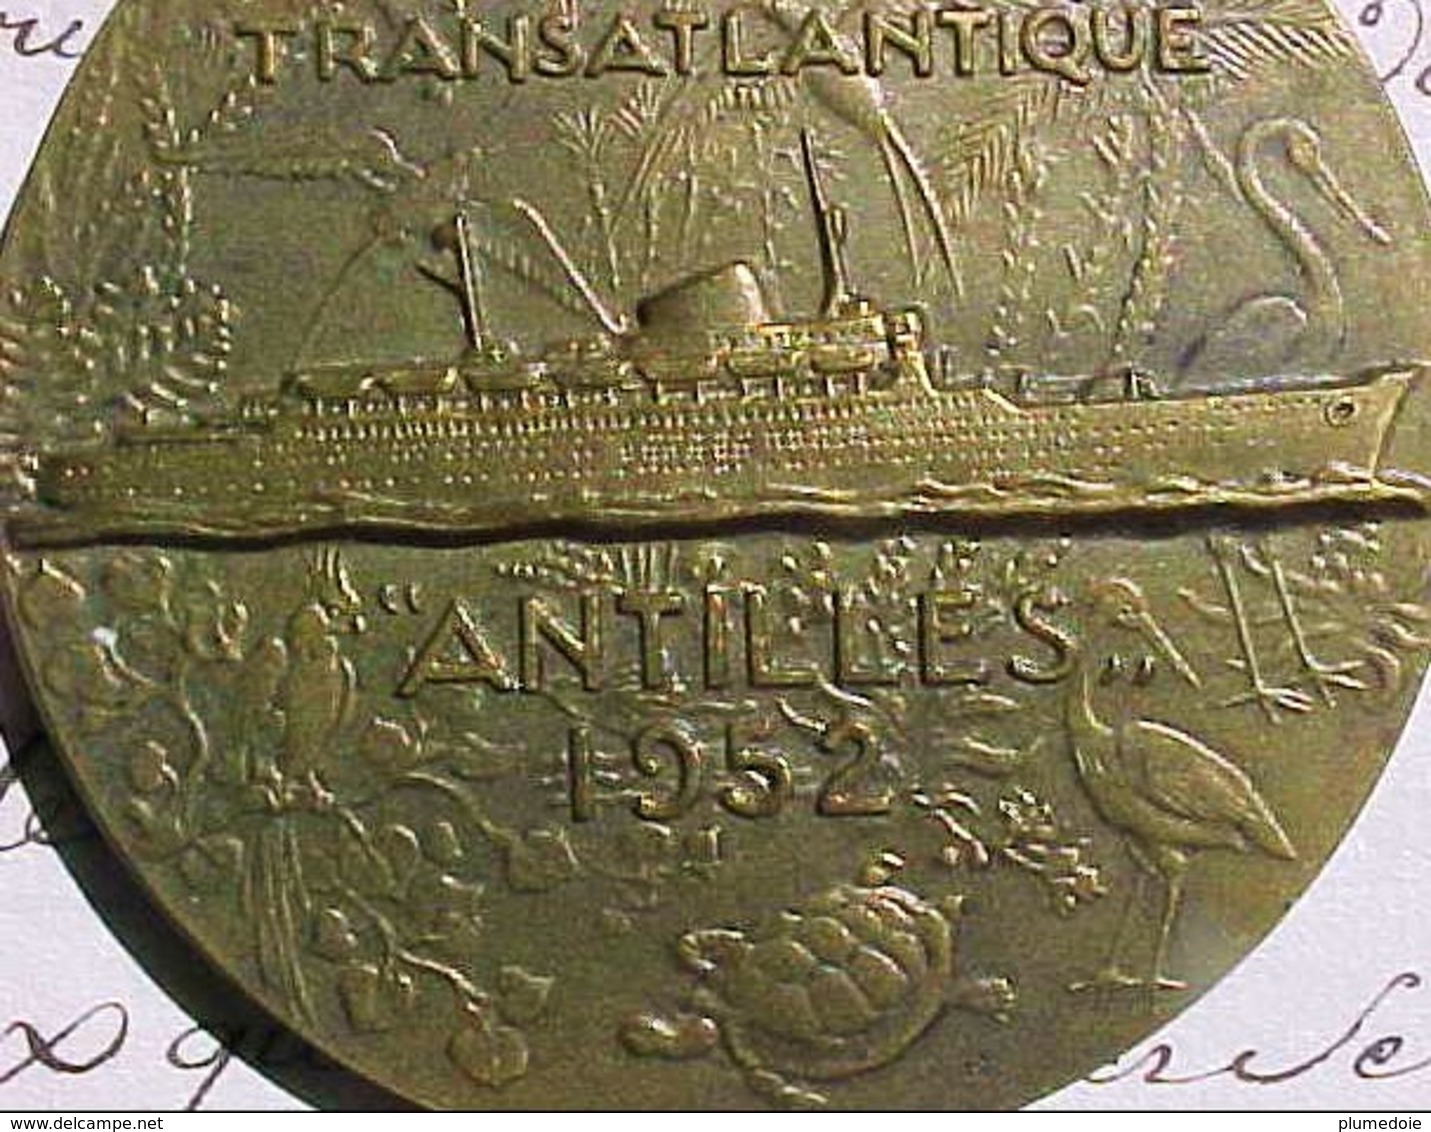 MEDAILLE Bronze ,COMPAGNIE GENERALE TRANSATLANTIQUE PAQUEBOT ANTILLES 1952 ,R. DELAMARRE SS Antilles Cruise Ship MEDAL - Professionnels / De Société